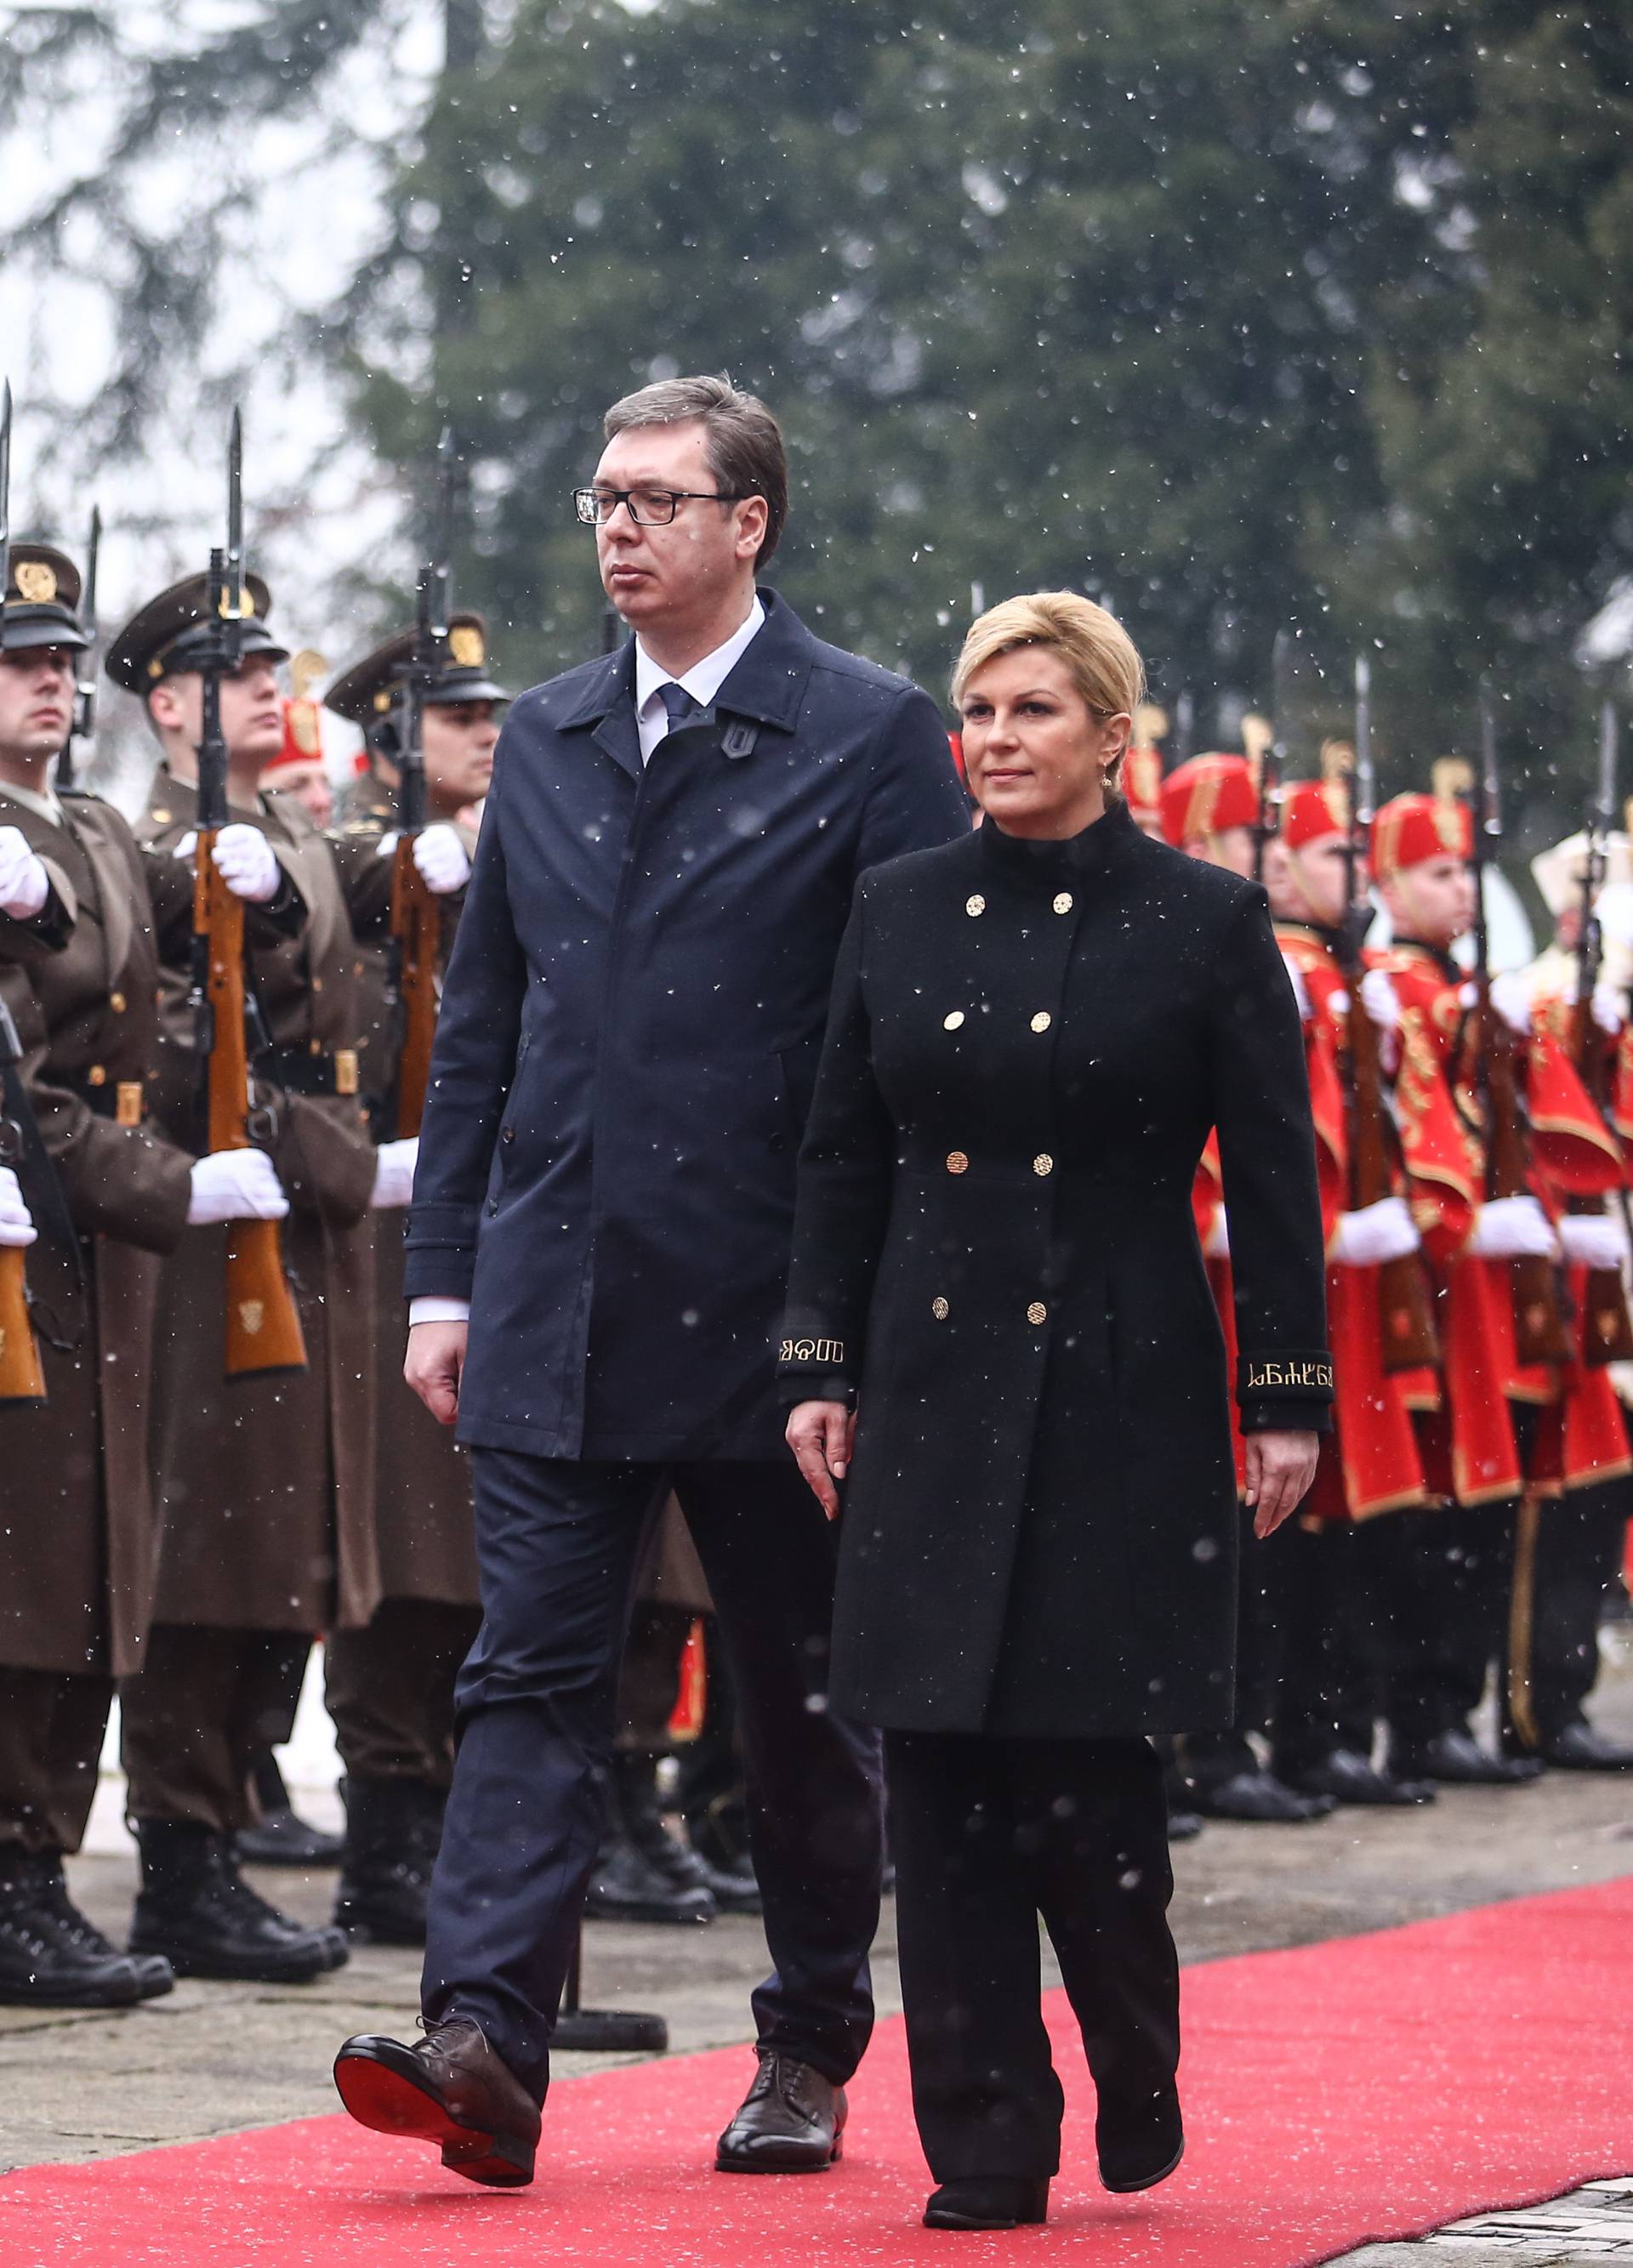 'S Vučićem sam razgovarao o suradnji, odšteti, nestalima...'